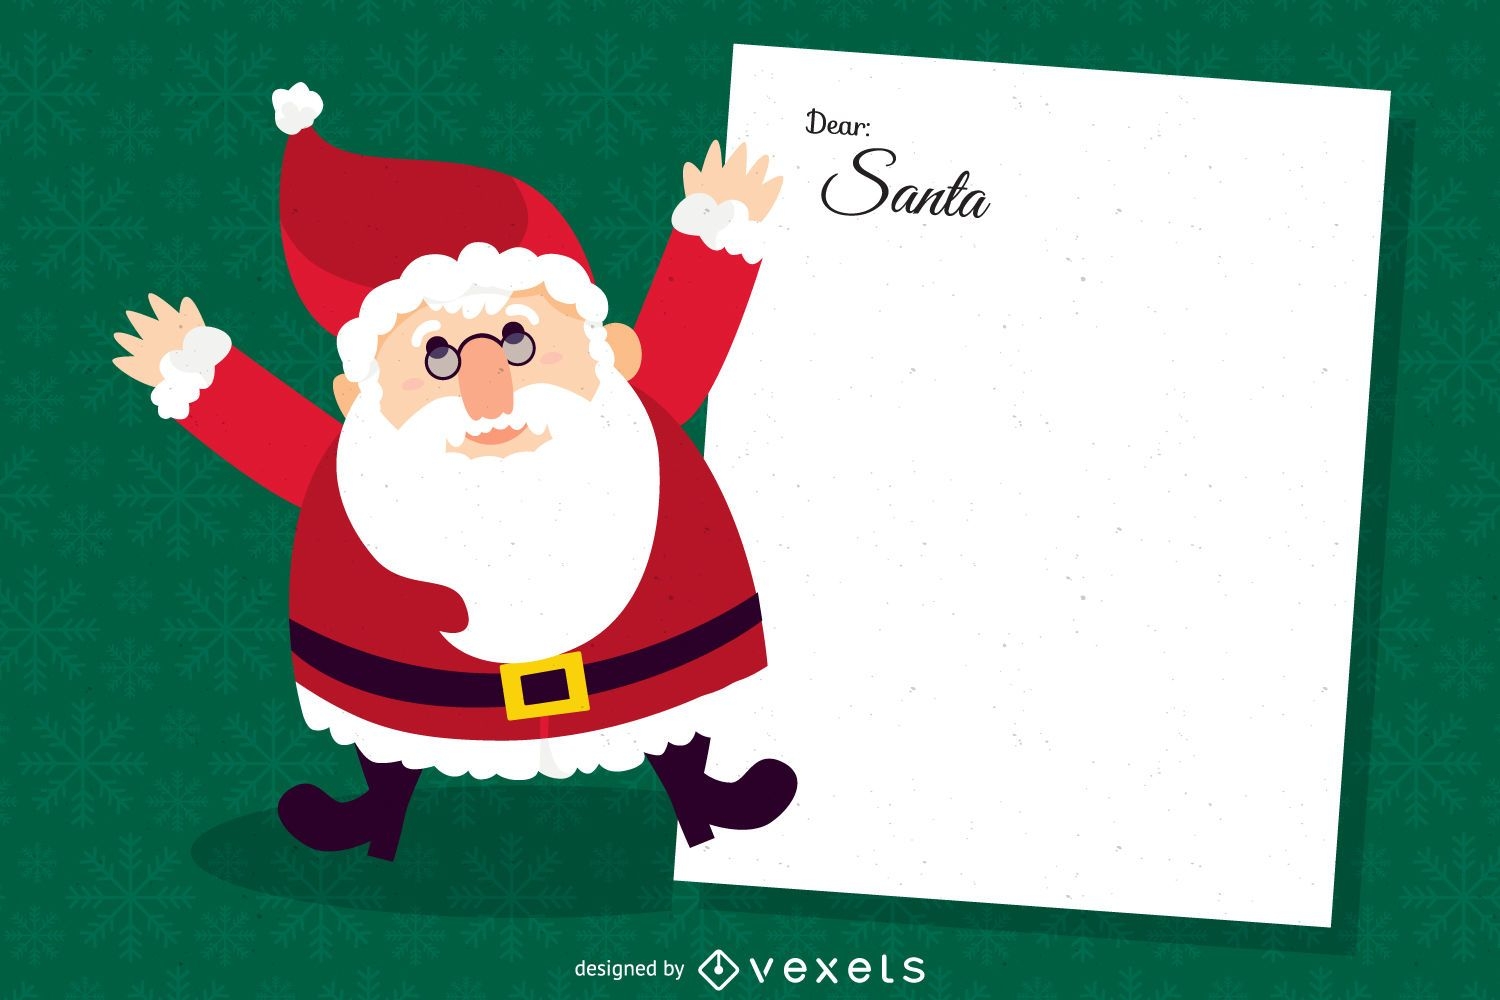 Dear Santa letter illustration